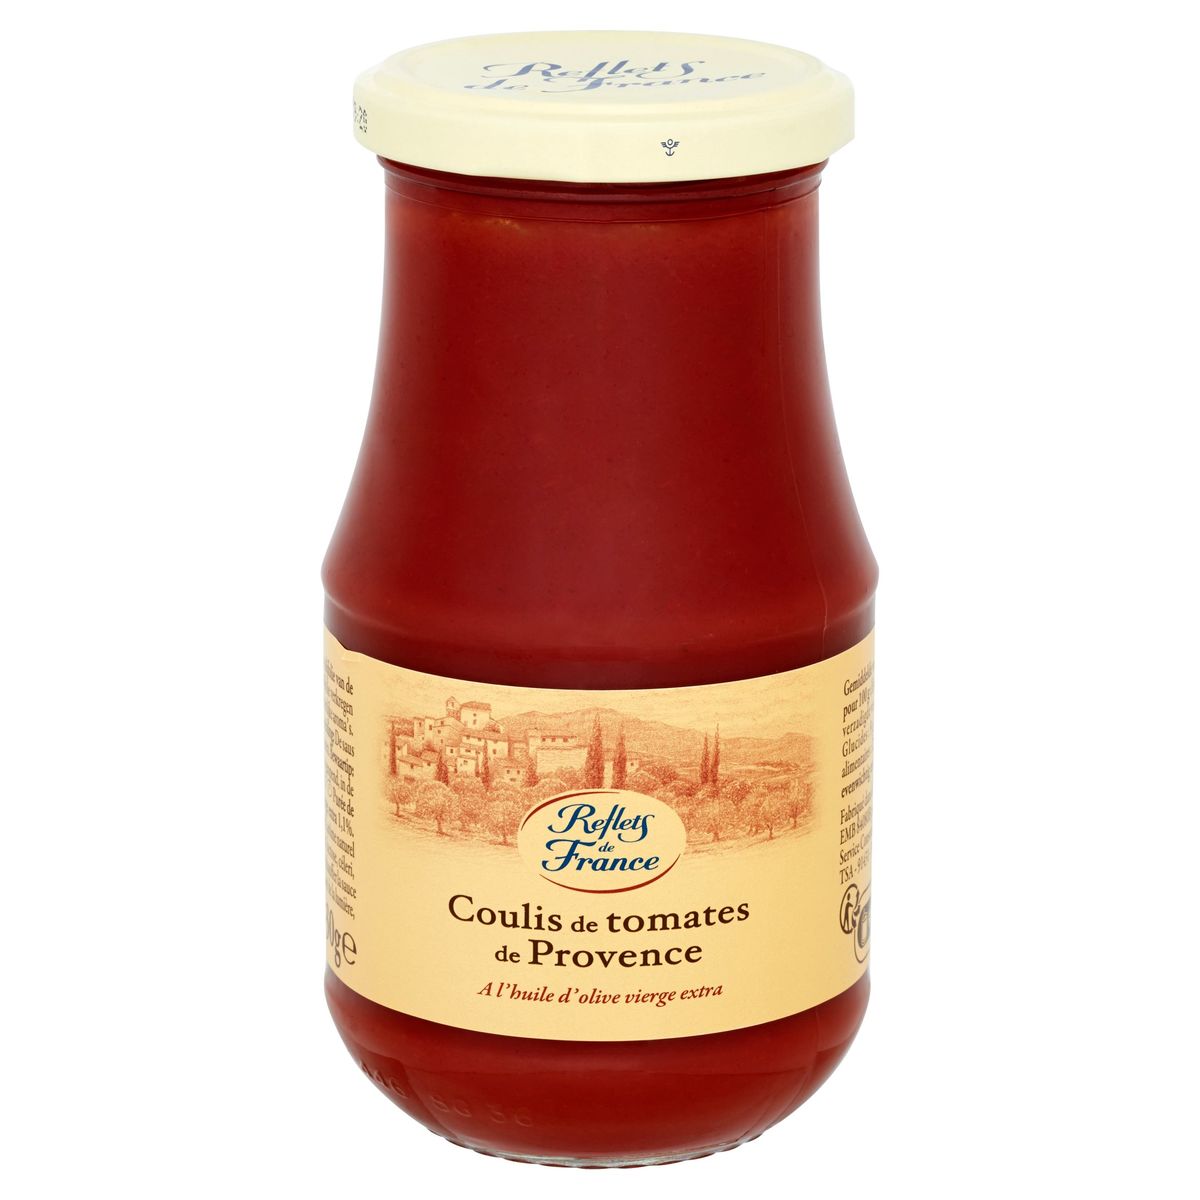 Sauce coulis de tomate CARREFOUR